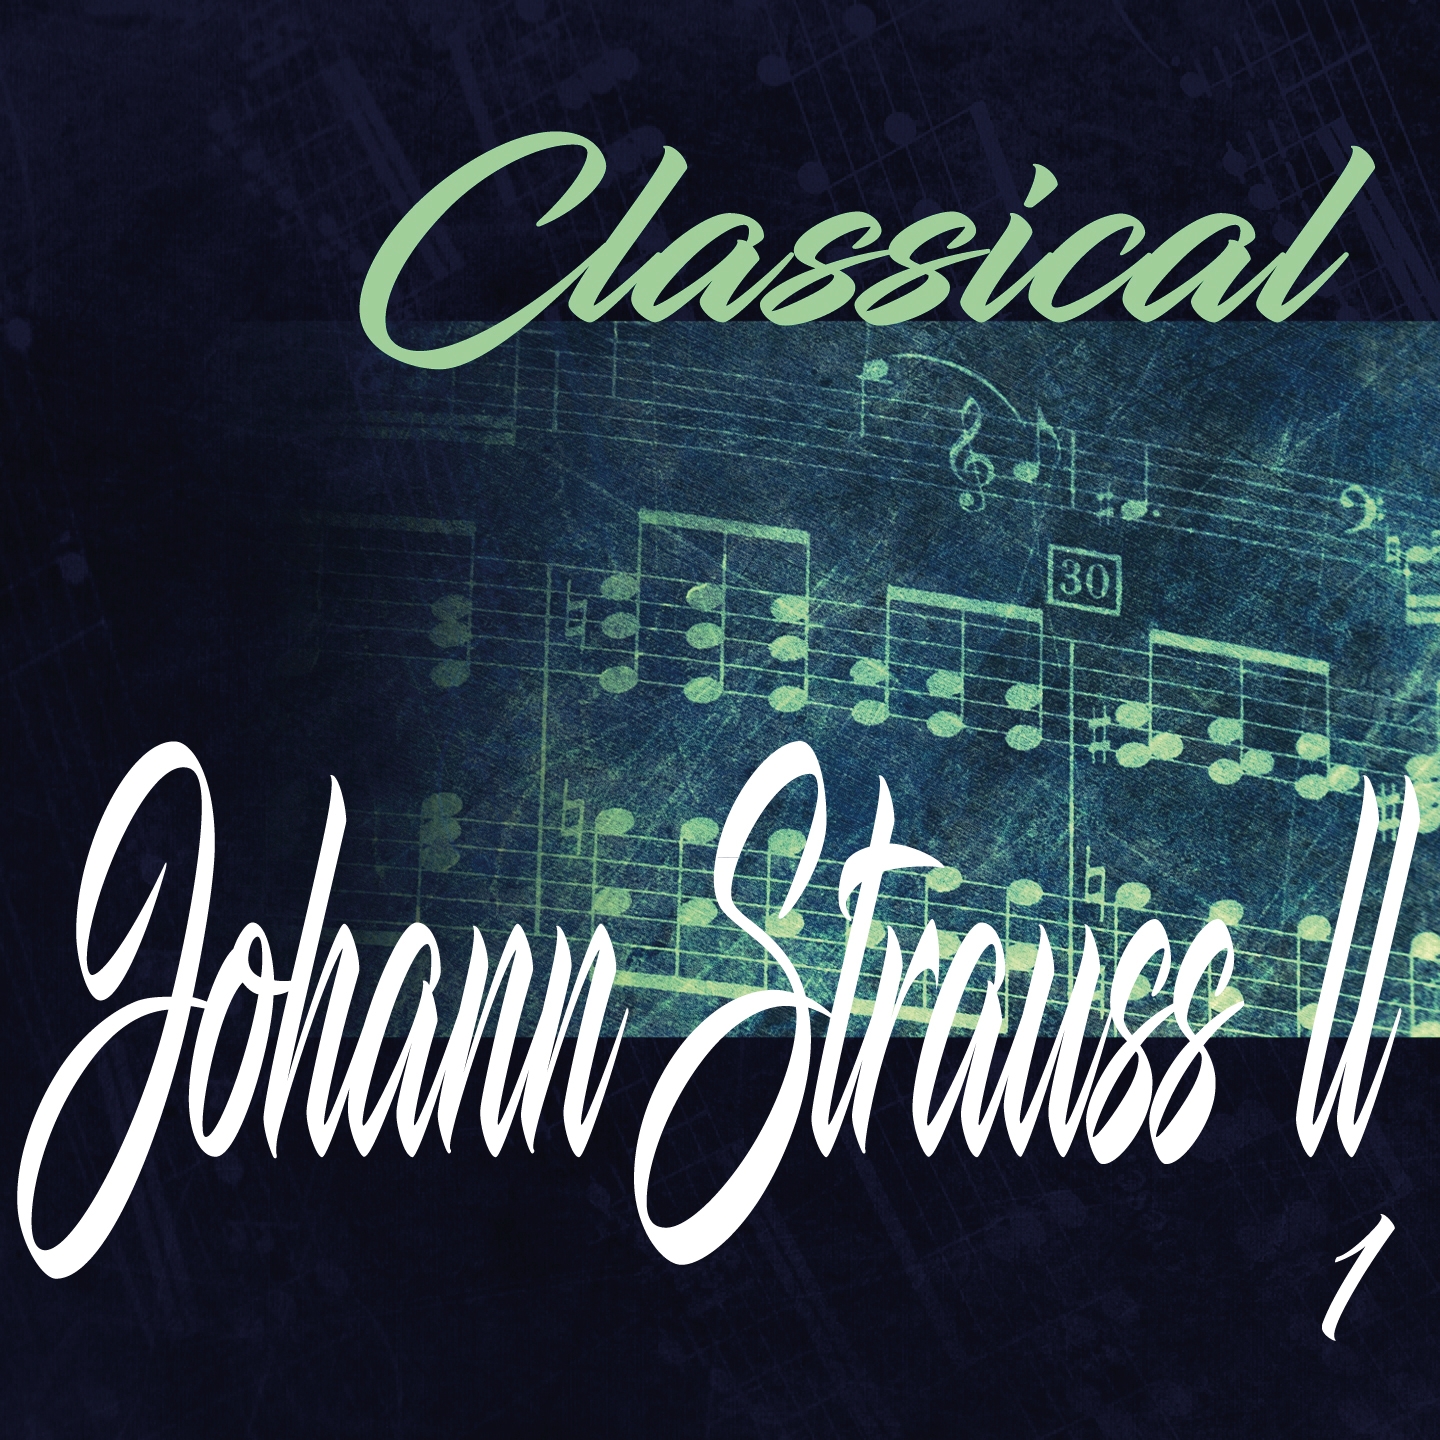 Classical Johann Strauss II 1